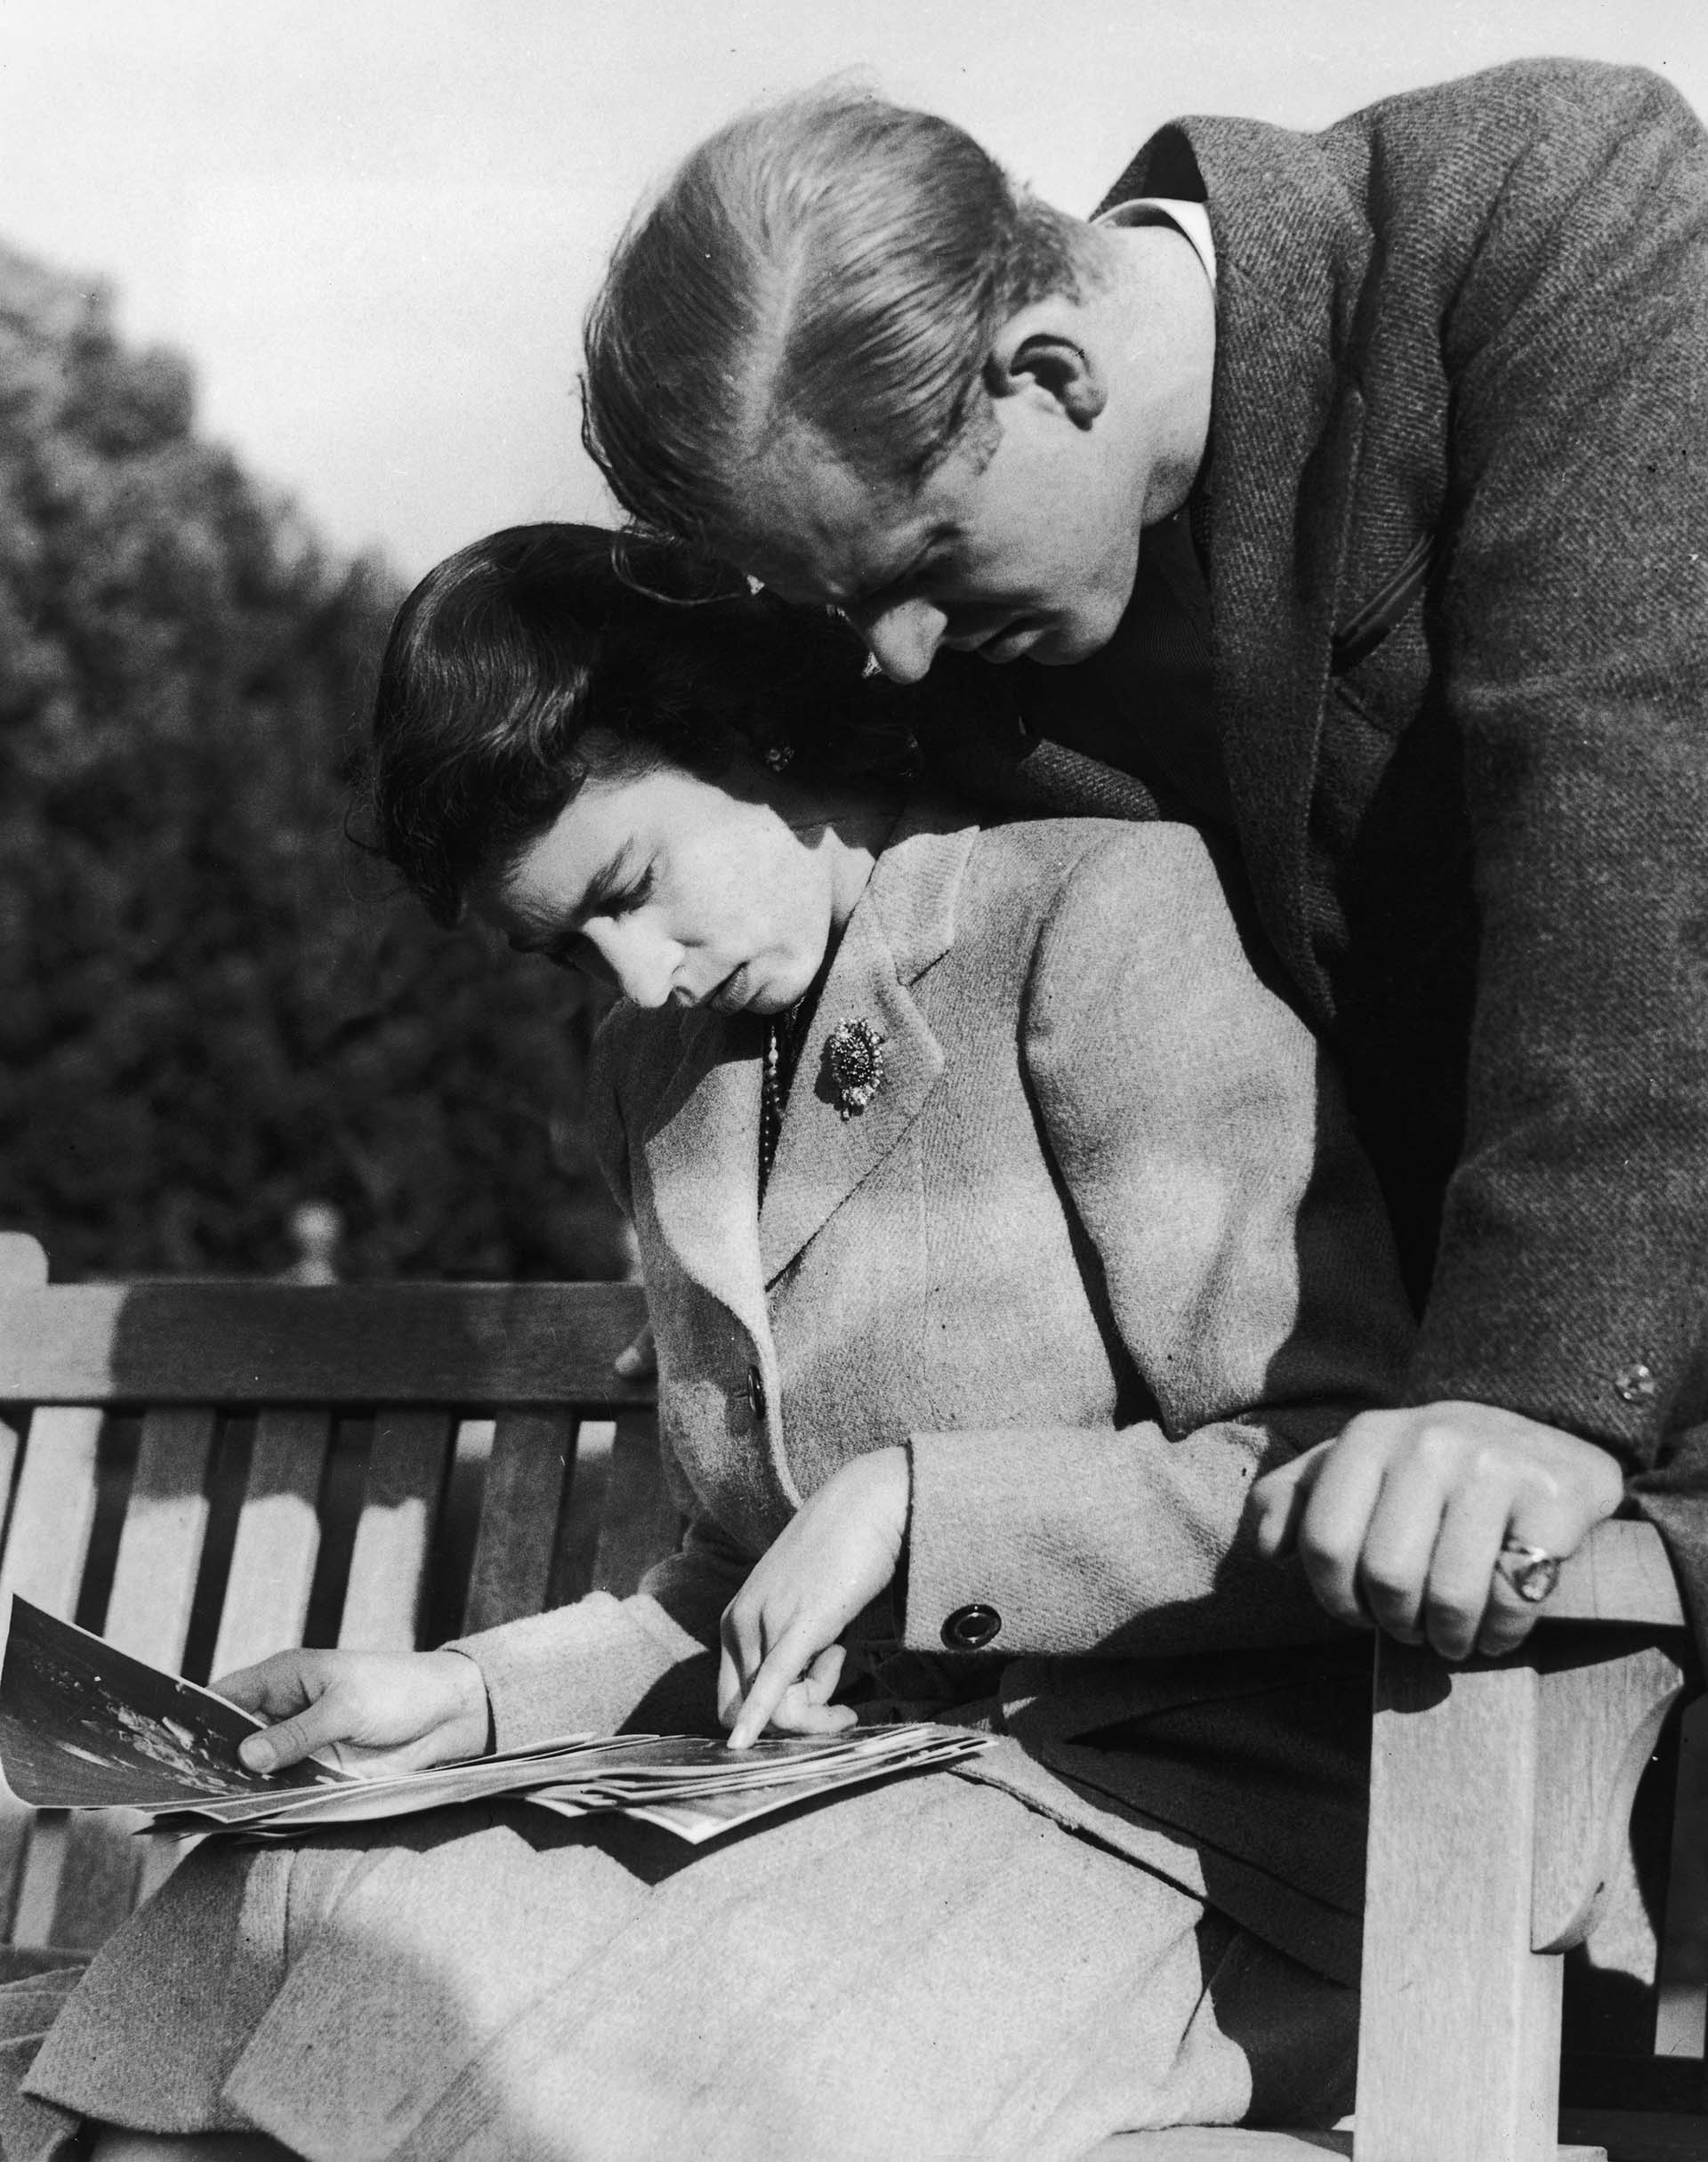 La princesa Isabel (más tarde reina Isabel II) y su marido, Philip Mountbatten, estudian las fotografías de su boda durante su luna de miel en Romsey, Hampshire, en noviembre de 1947. (Photo by Keystone/Hulton Archive/Getty Images)